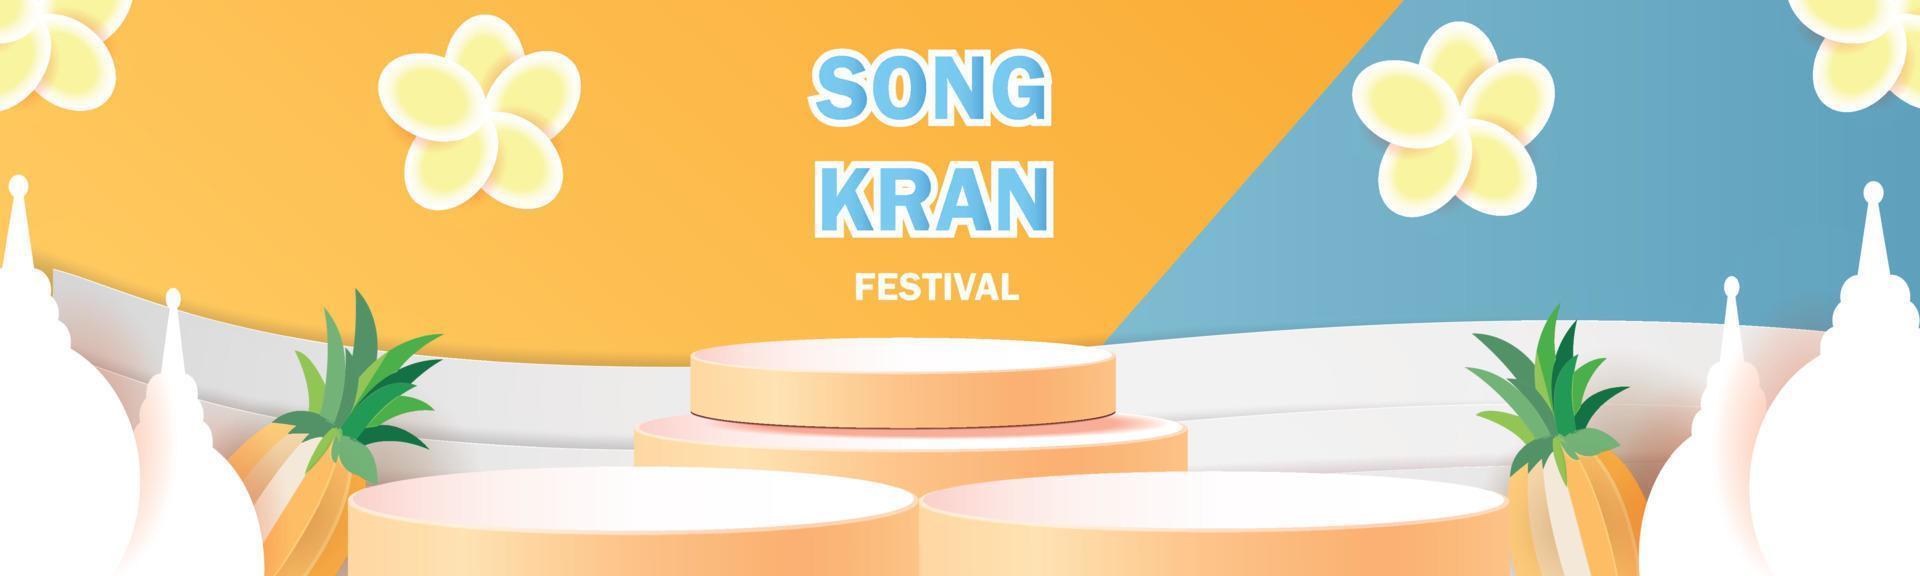 gelukkig songkran festival in thailand podium verkoop poster vector bloem op zomer april sjabloon concept